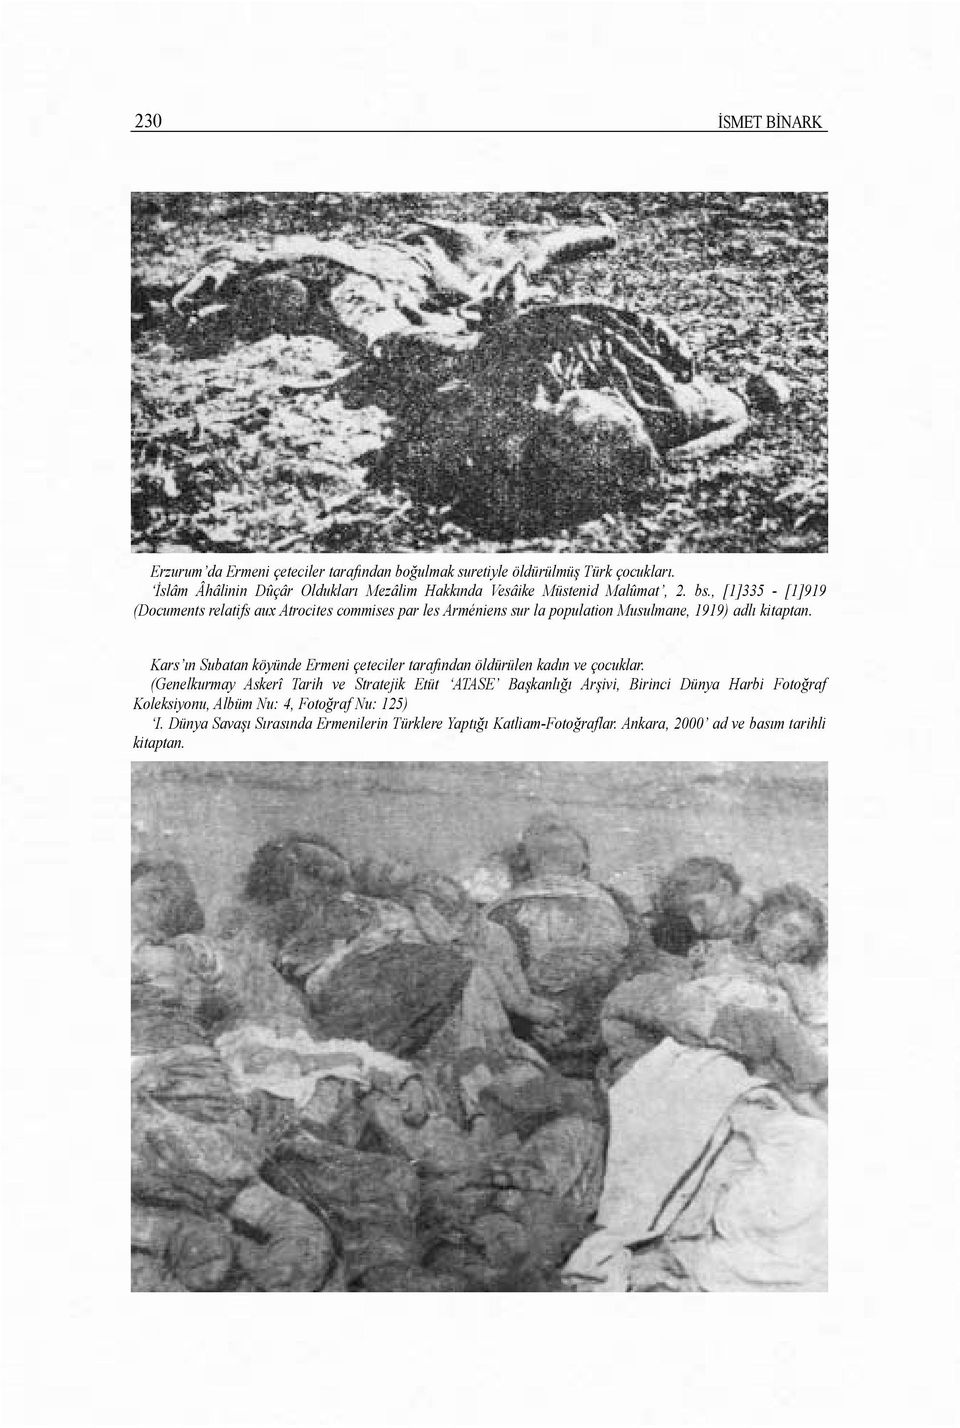 , [1]335 - [1]919 (Documents relatifs aux Atrocites commises par les Arméniens sur la population Musulmane, 1919) adlõ kitaptan.